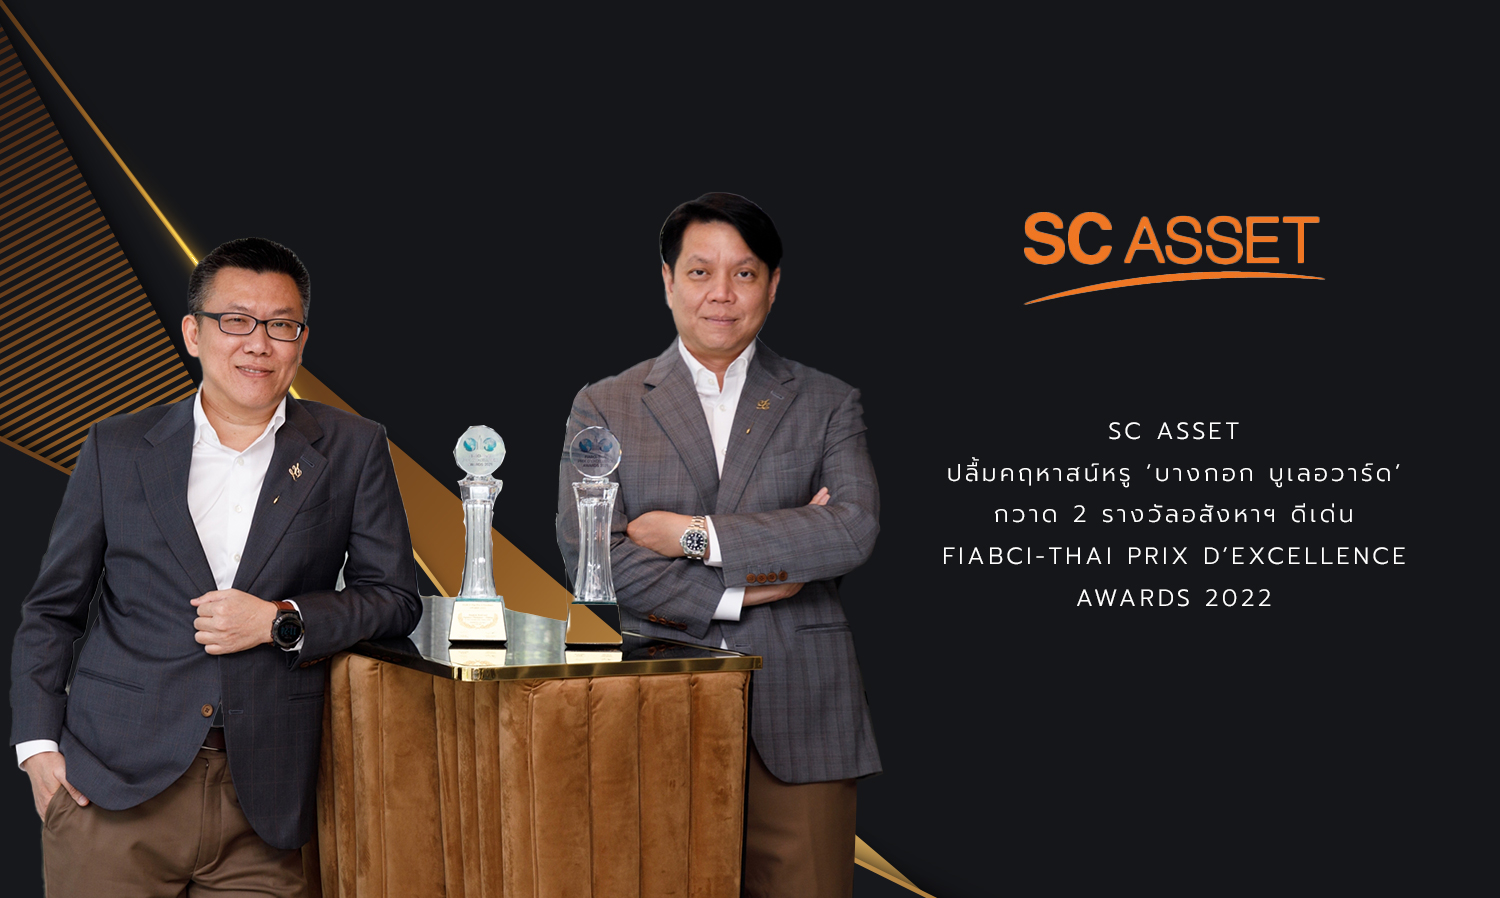 SC Asset ปลื้มคฤหาสน์หรู ‘บางกอก บูเลอวาร์ด’ กวาด 2 รางวัลอสังหาฯ ดีเด่น FIABCI-Thai PRIX D’EXCELLENCE AWARDS 2022